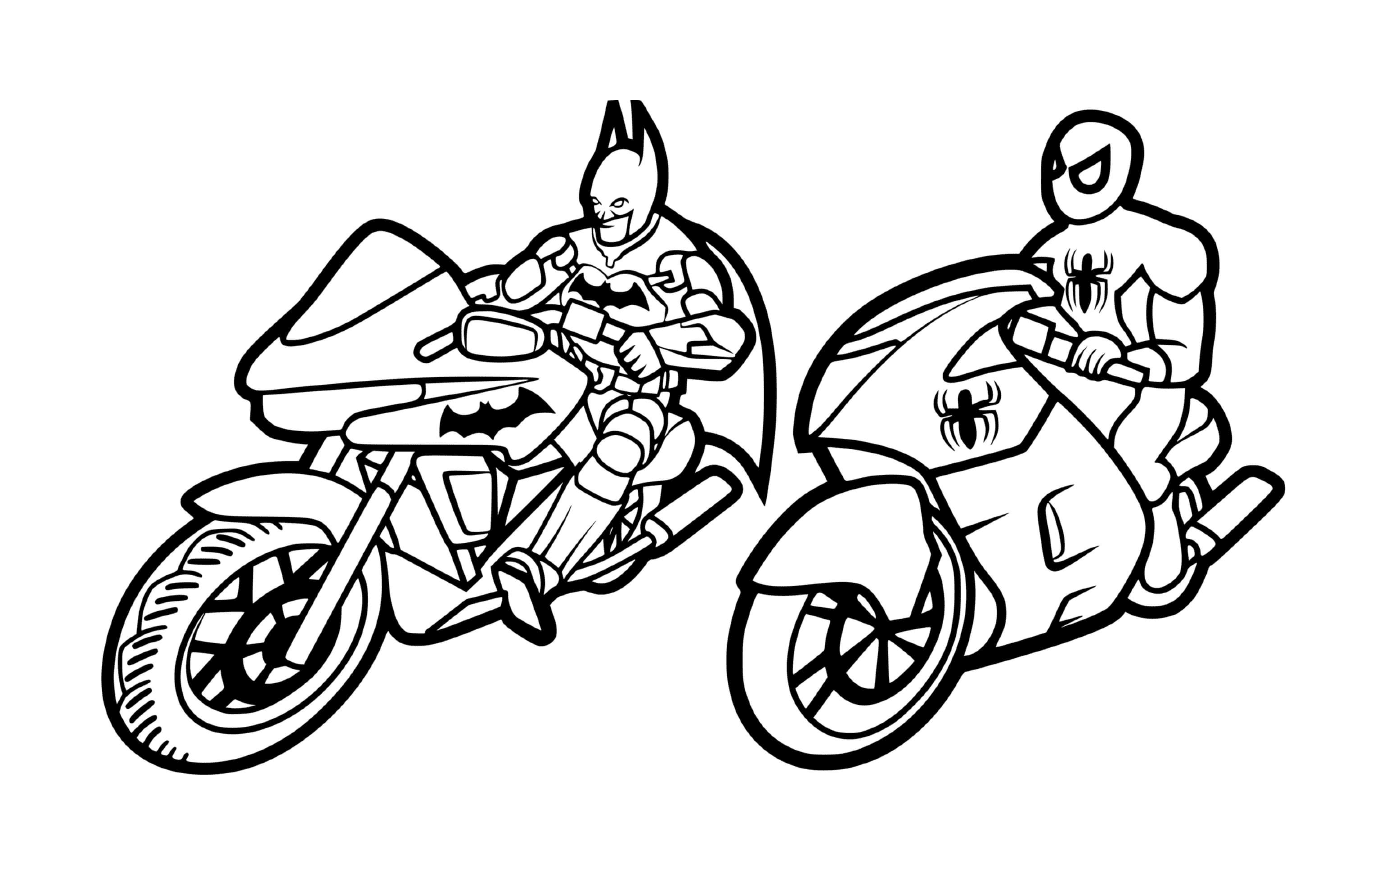  Бэтмен и Паукмен на мотоцикле 